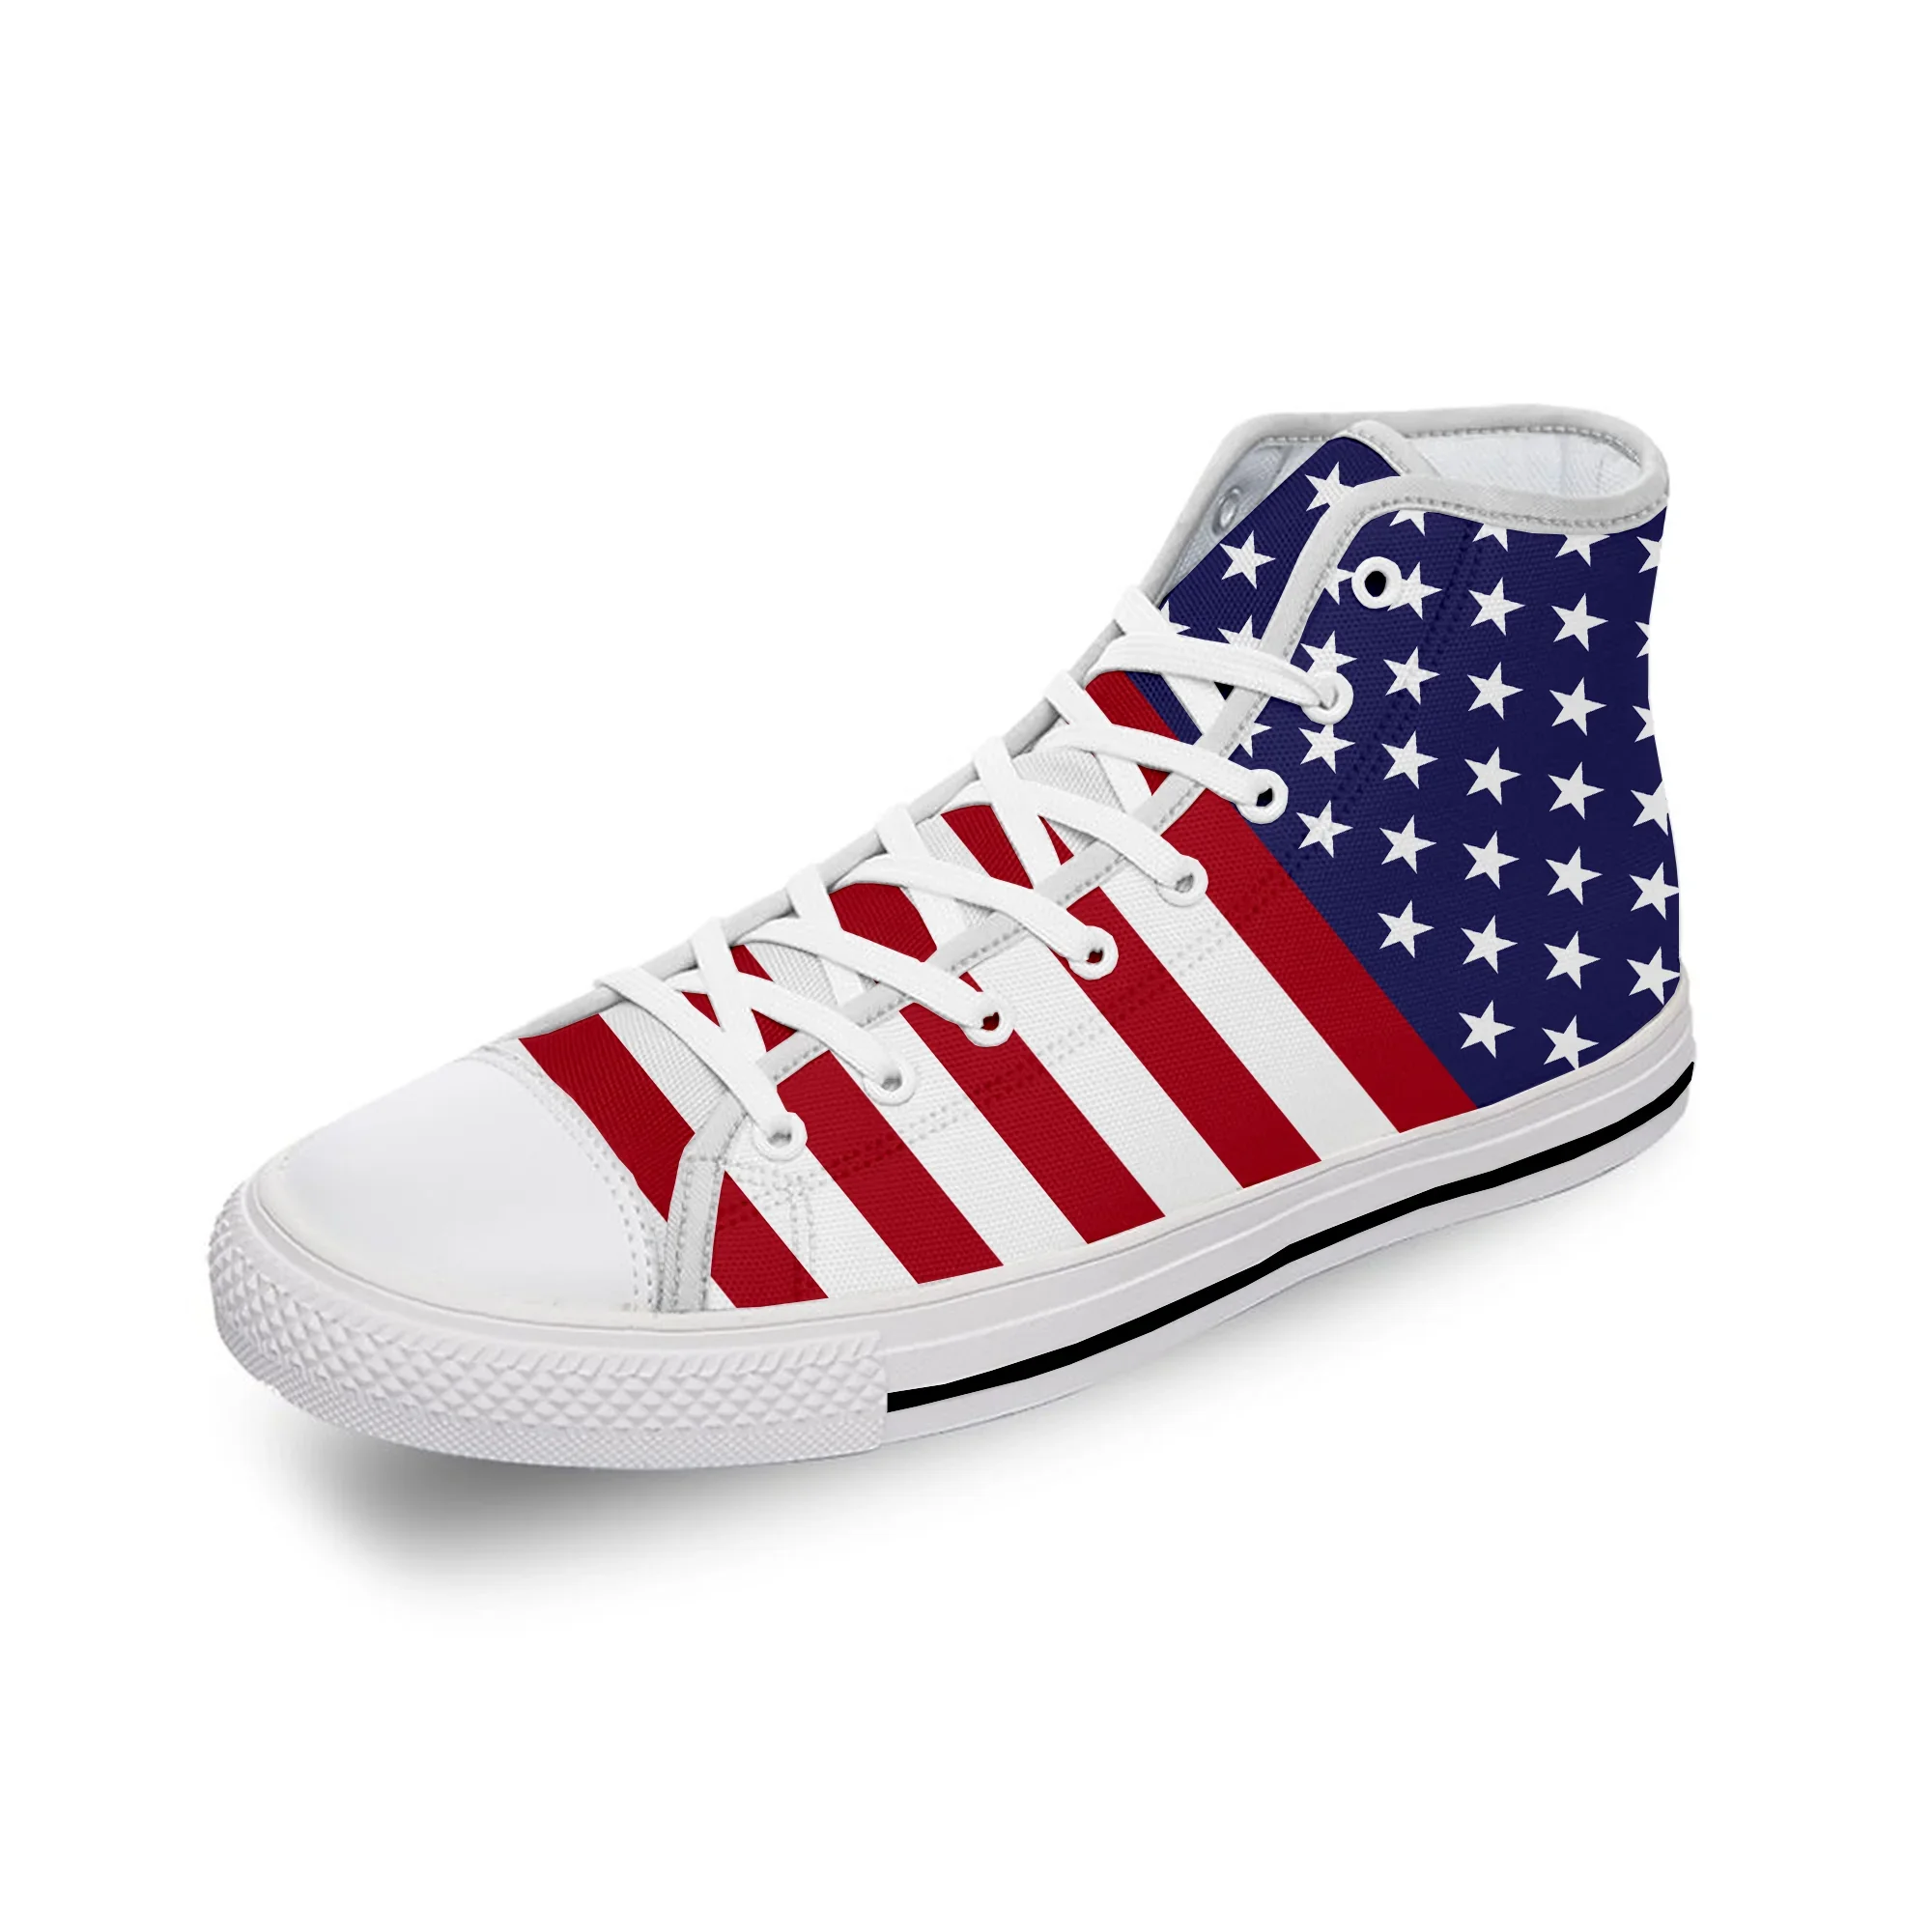 

Кроссовки унисекс из ткани с высоким верхом, легкие дышащие кеды с принтом, с флагом США, I LOVE AMERICA Patriot, повседневная спортивная обувь